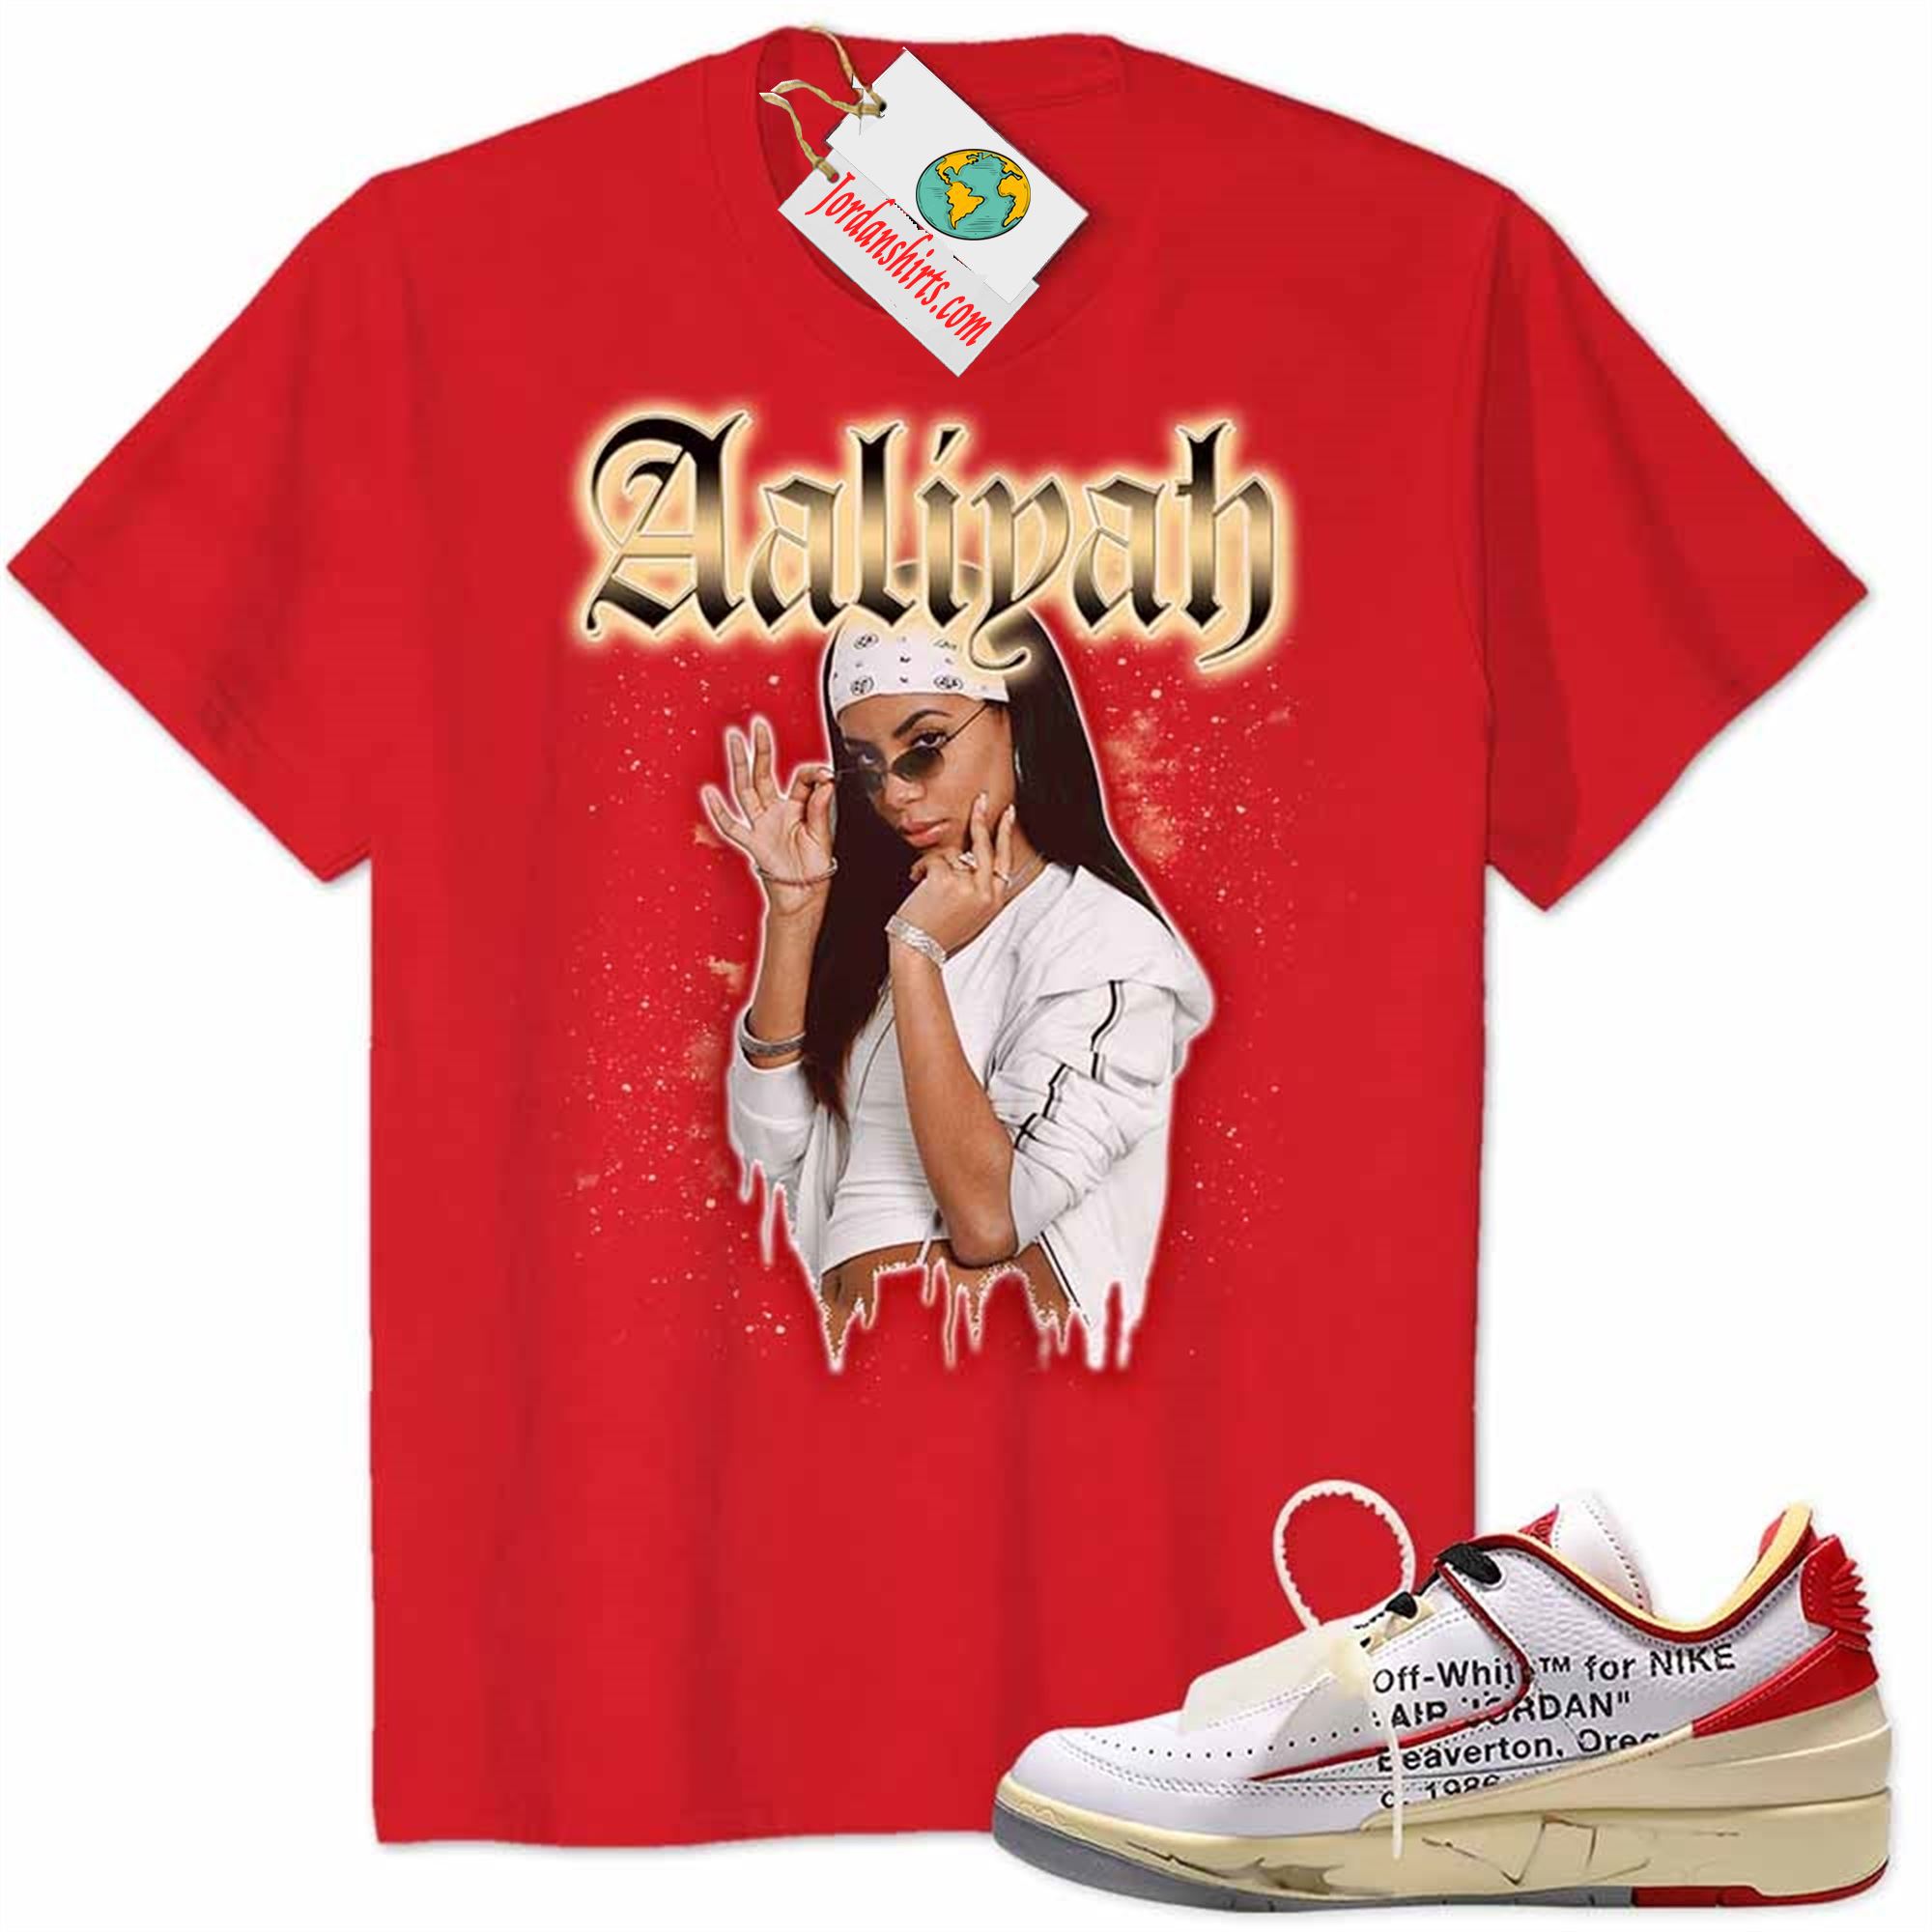 Jordan 2 Shirt, Aaliyah Graphic Red Air Jordan 2 Low White Red Off-white 2s Full Size Up To 5xl